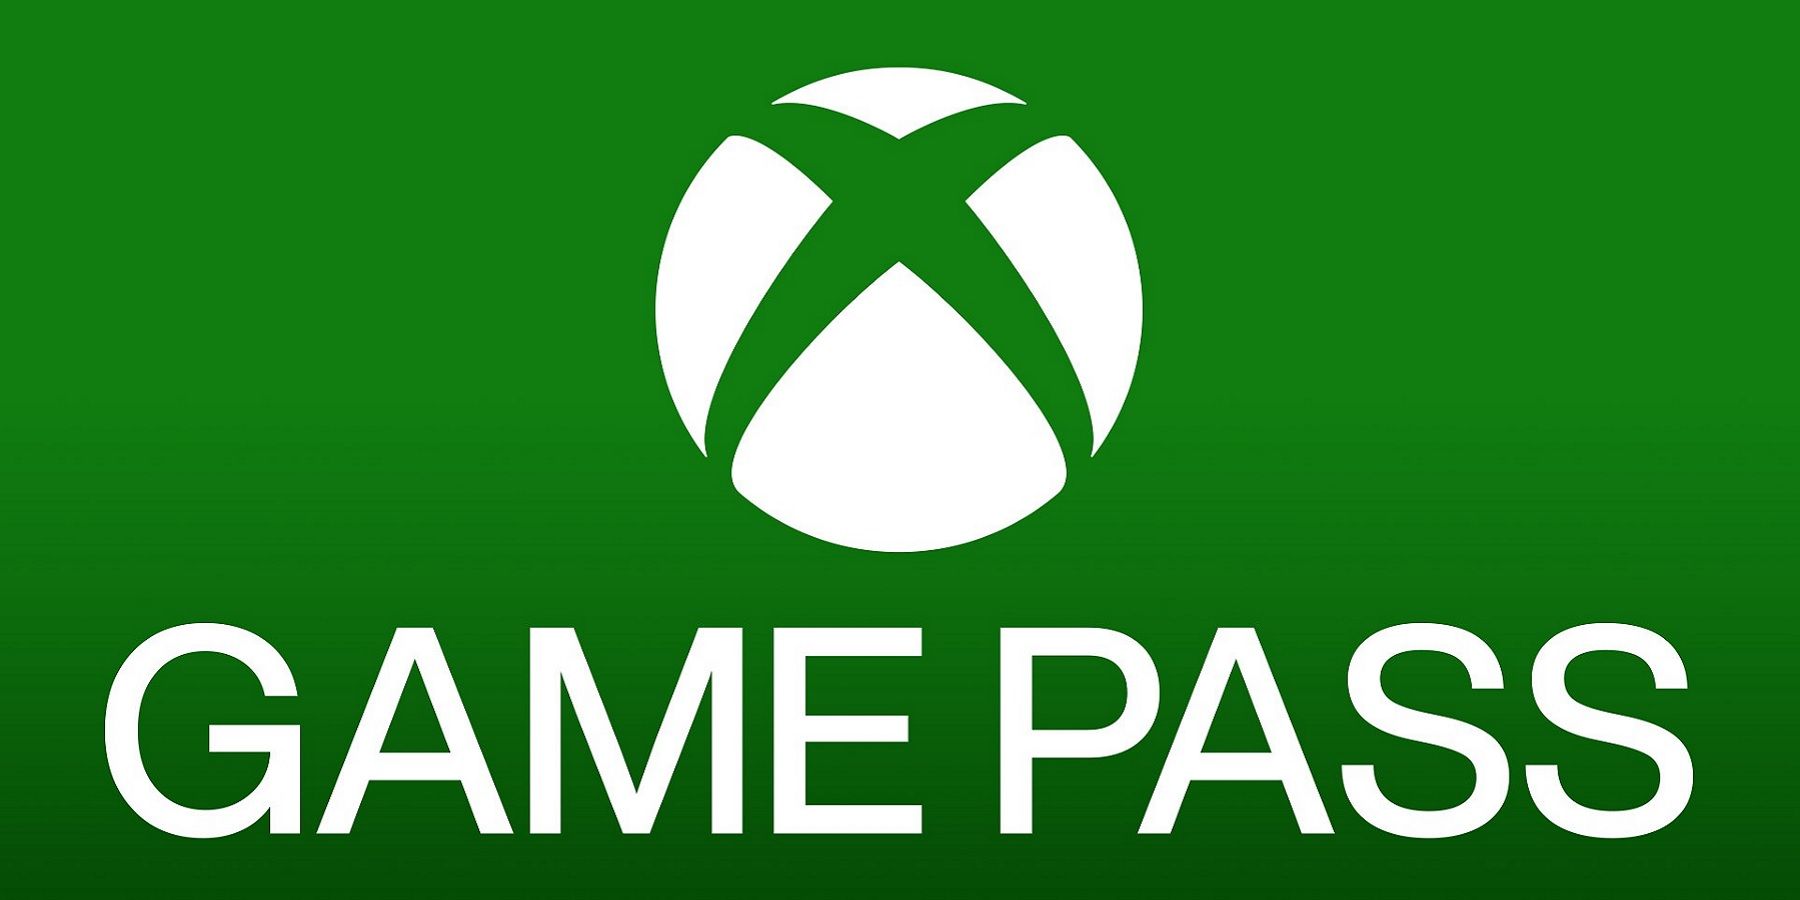 Chegando ao Xbox Game Pass: Hi-Fi Rush, GoldenEye 007, Age of